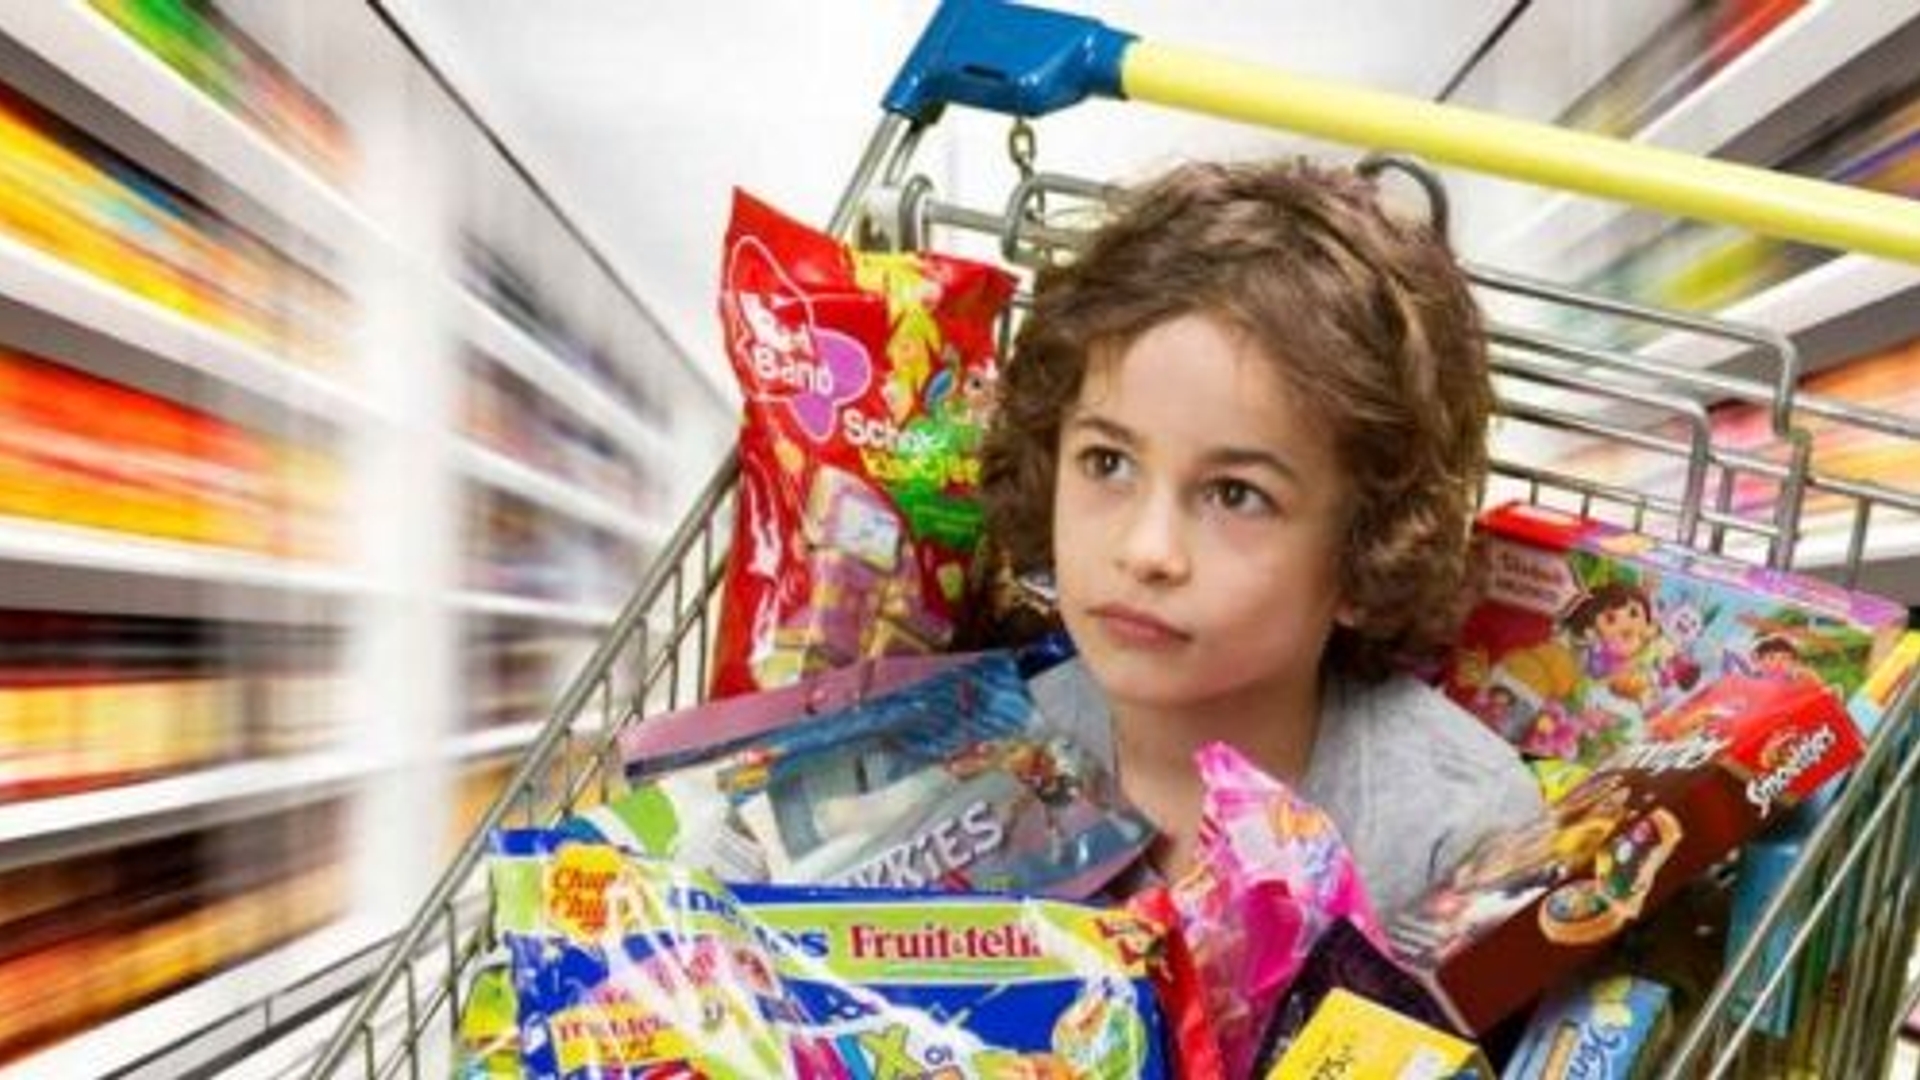 foodwatch-geen-kindermarketing-ongezonde-producten